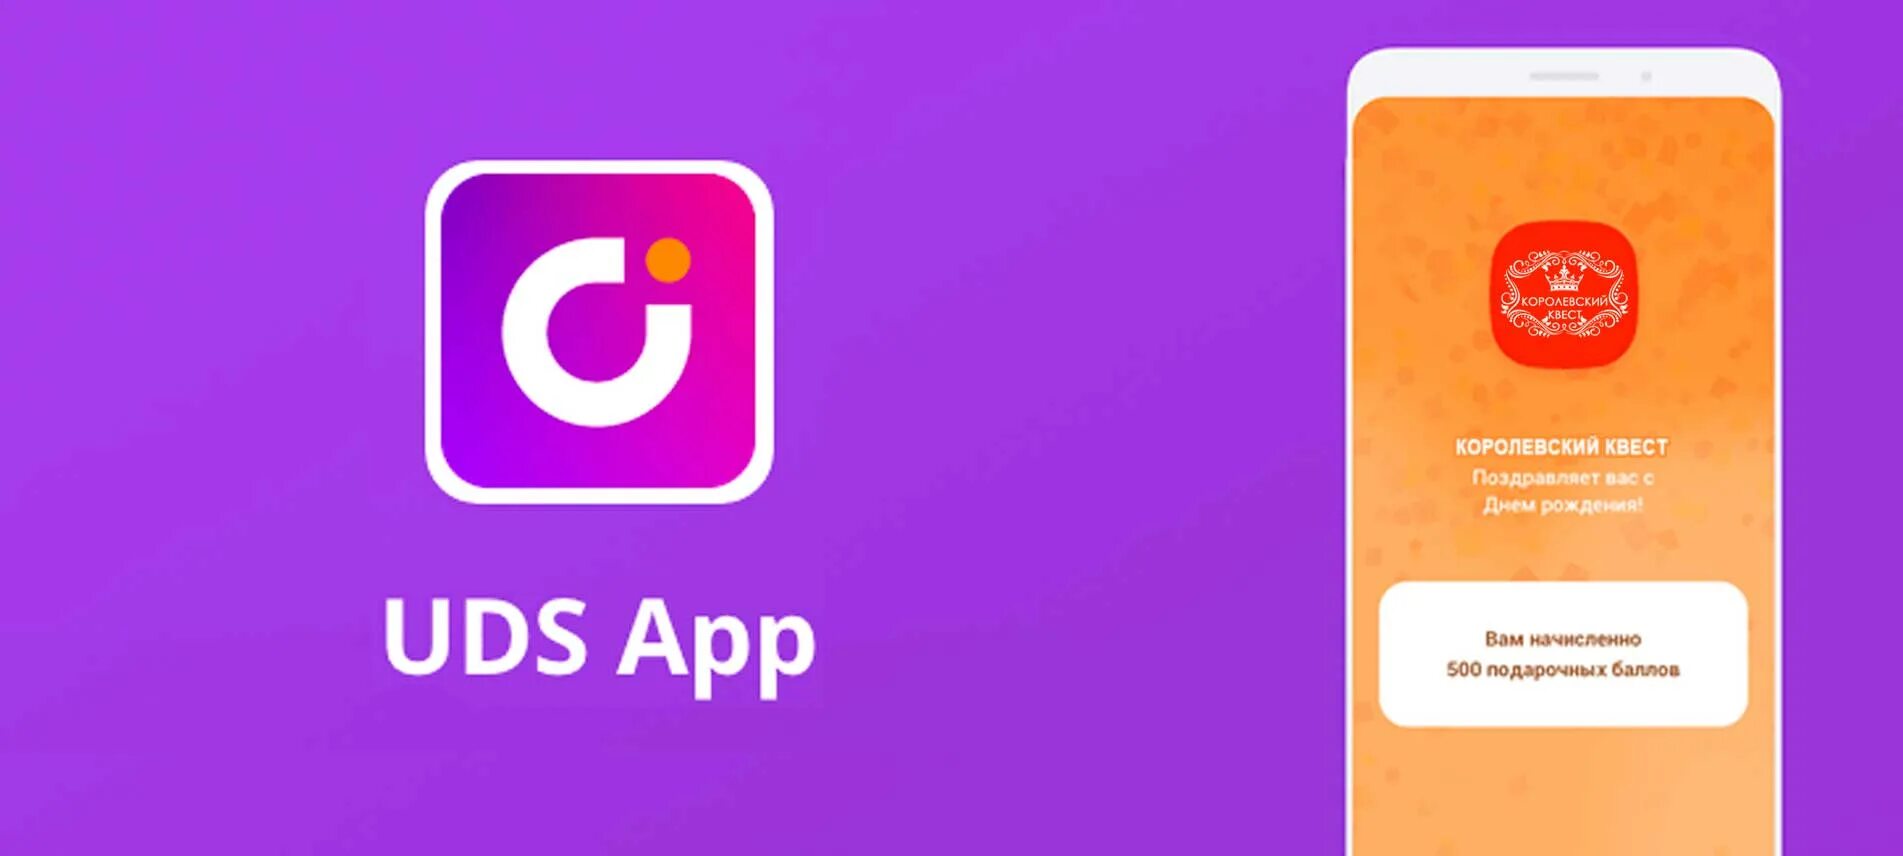 Https uds app. UDS. UDS логотип. ЮДС приложение. Мобильное приложение UDS.